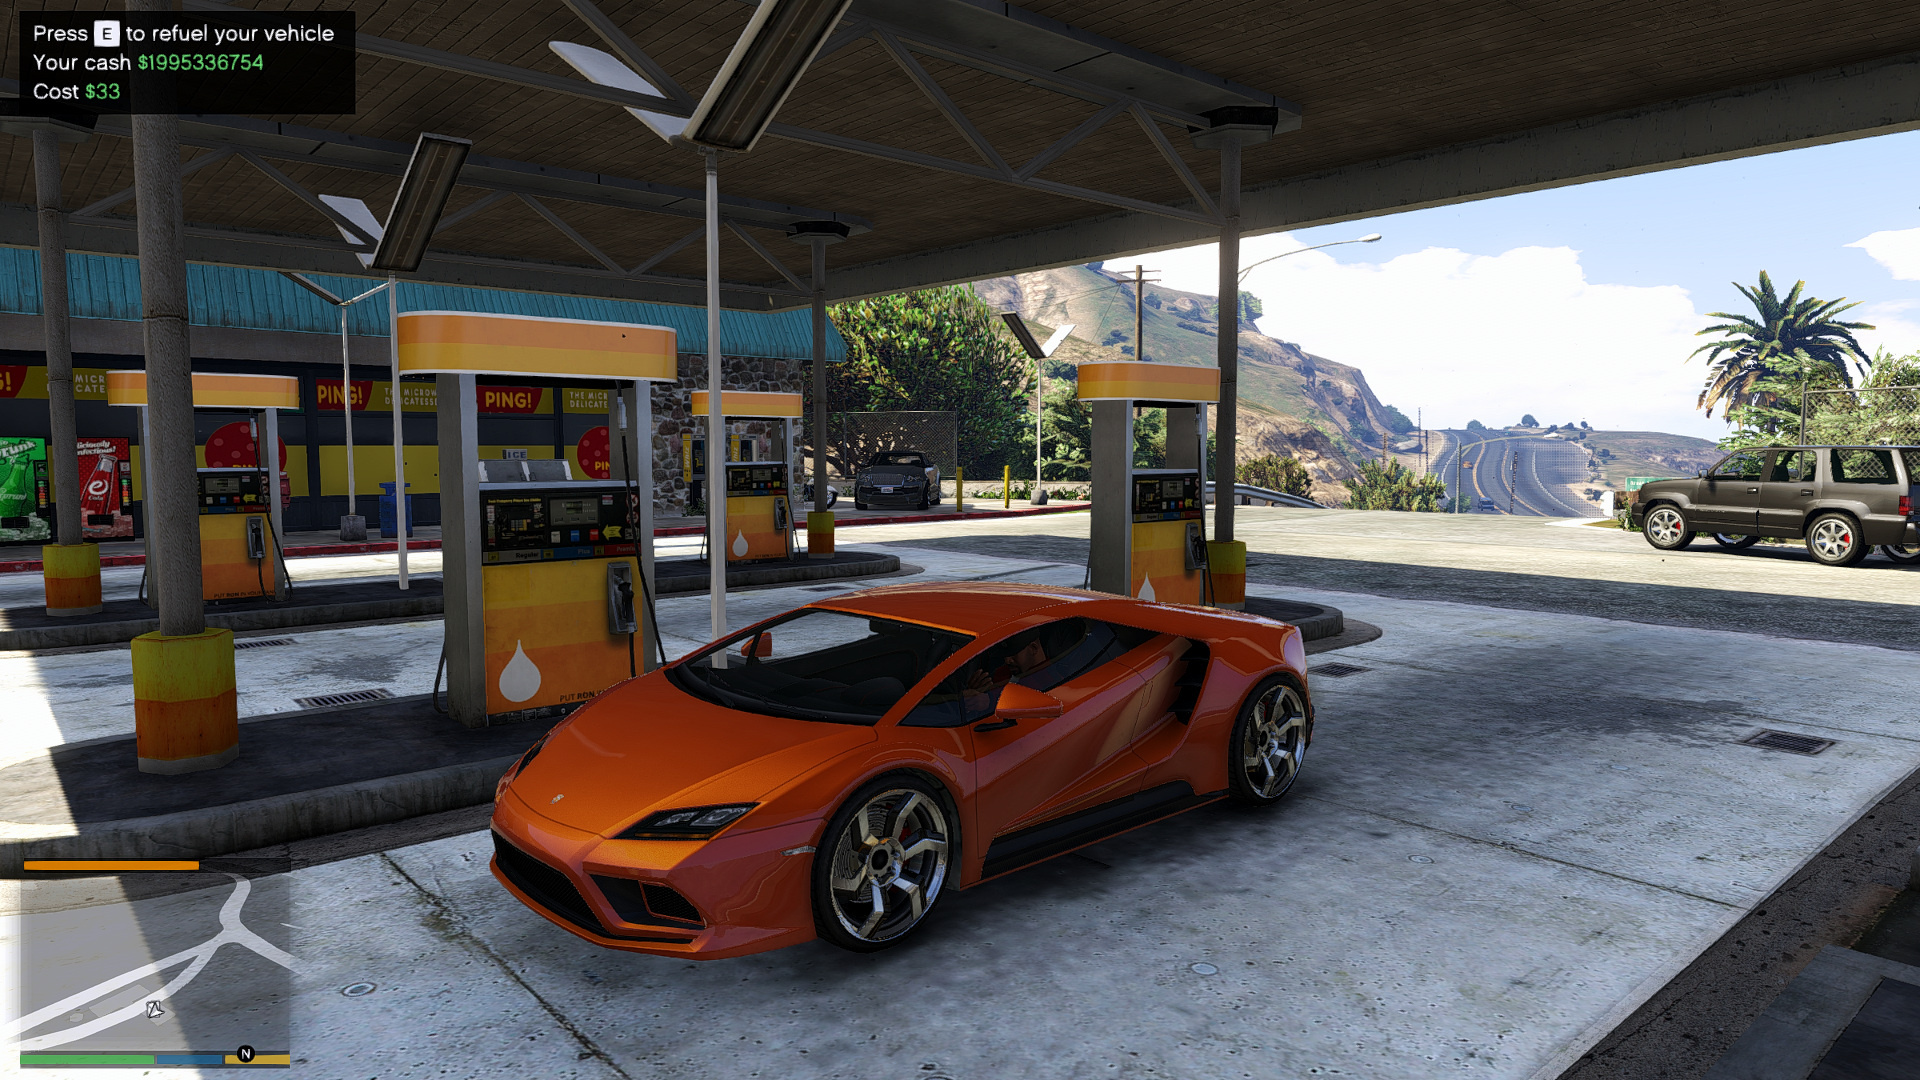 Um bom carro em um posto de gasolina.